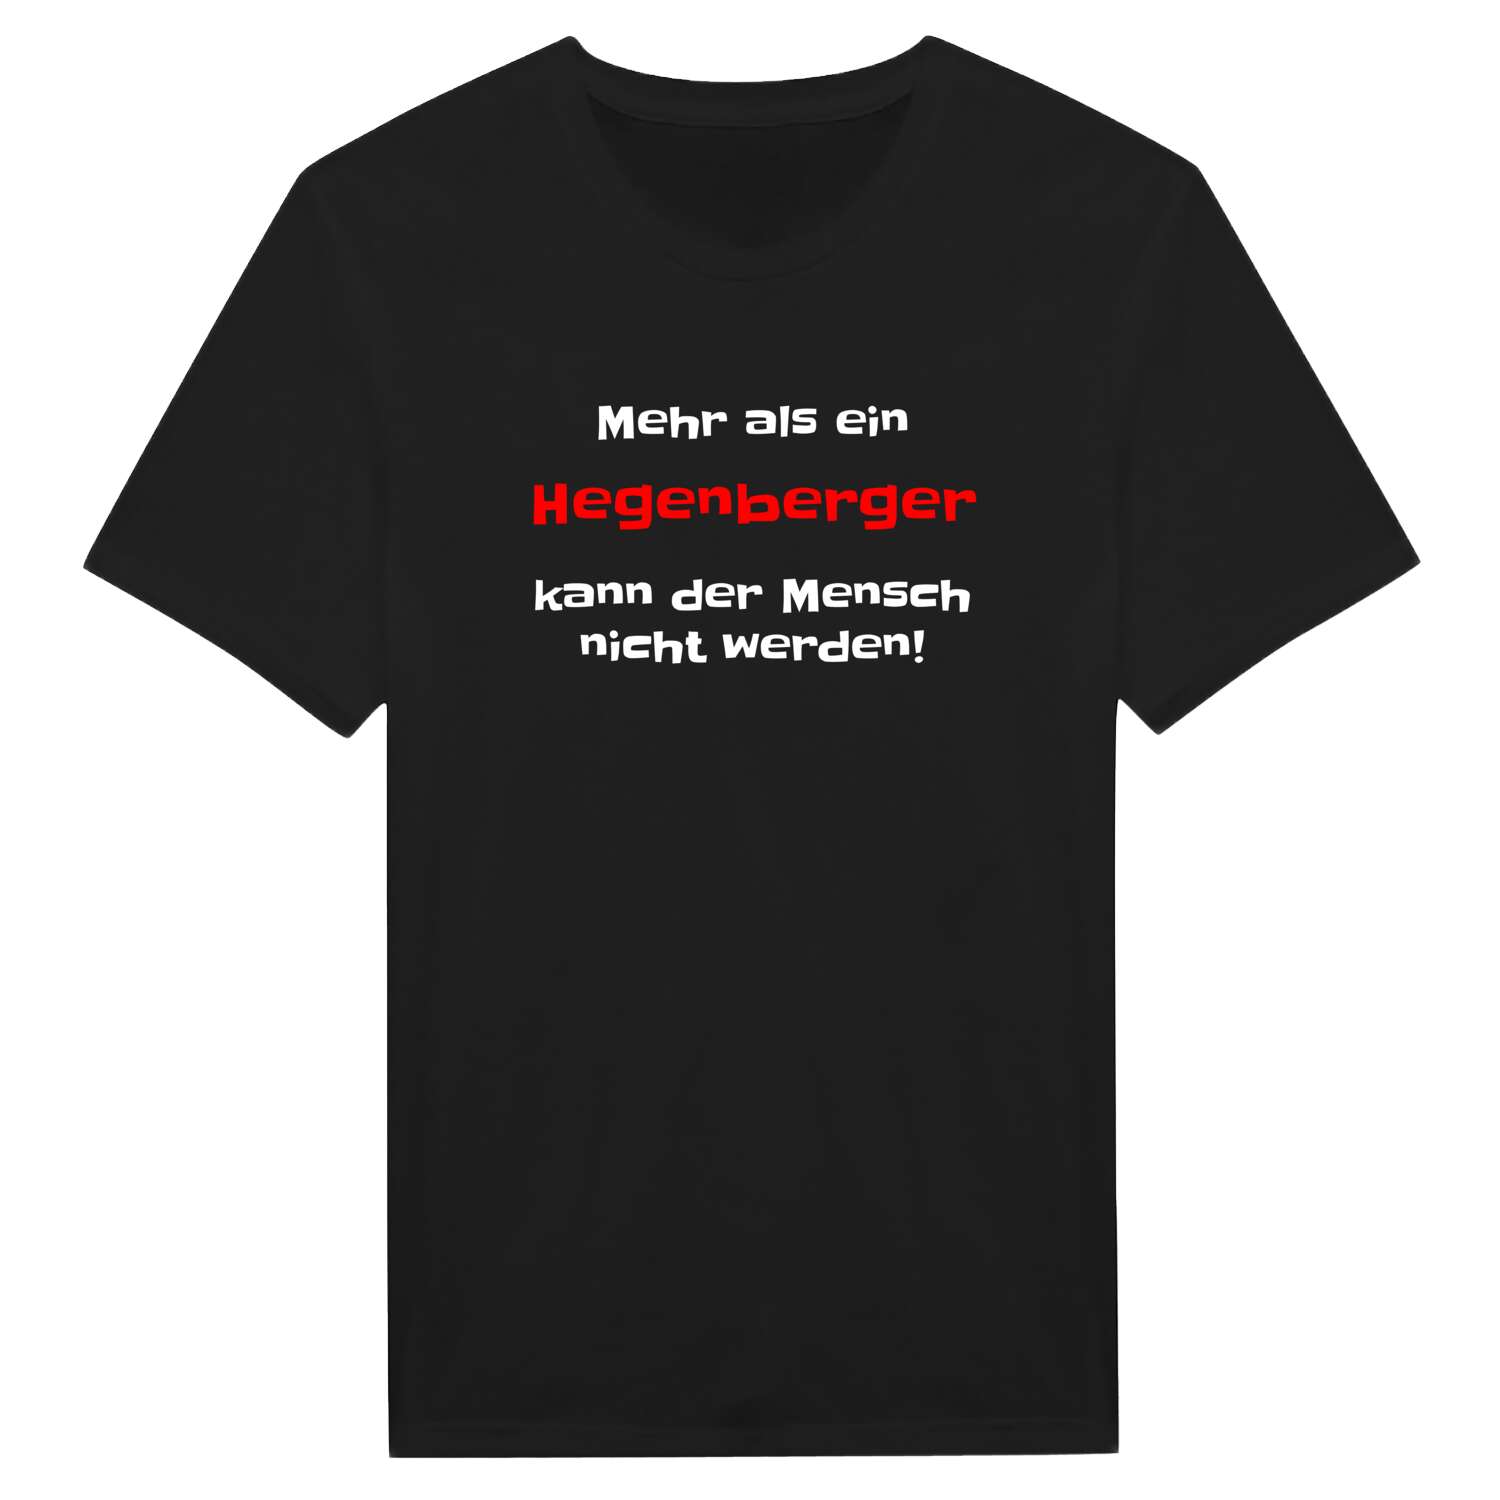 Hegenberg T-Shirt »Mehr als ein«